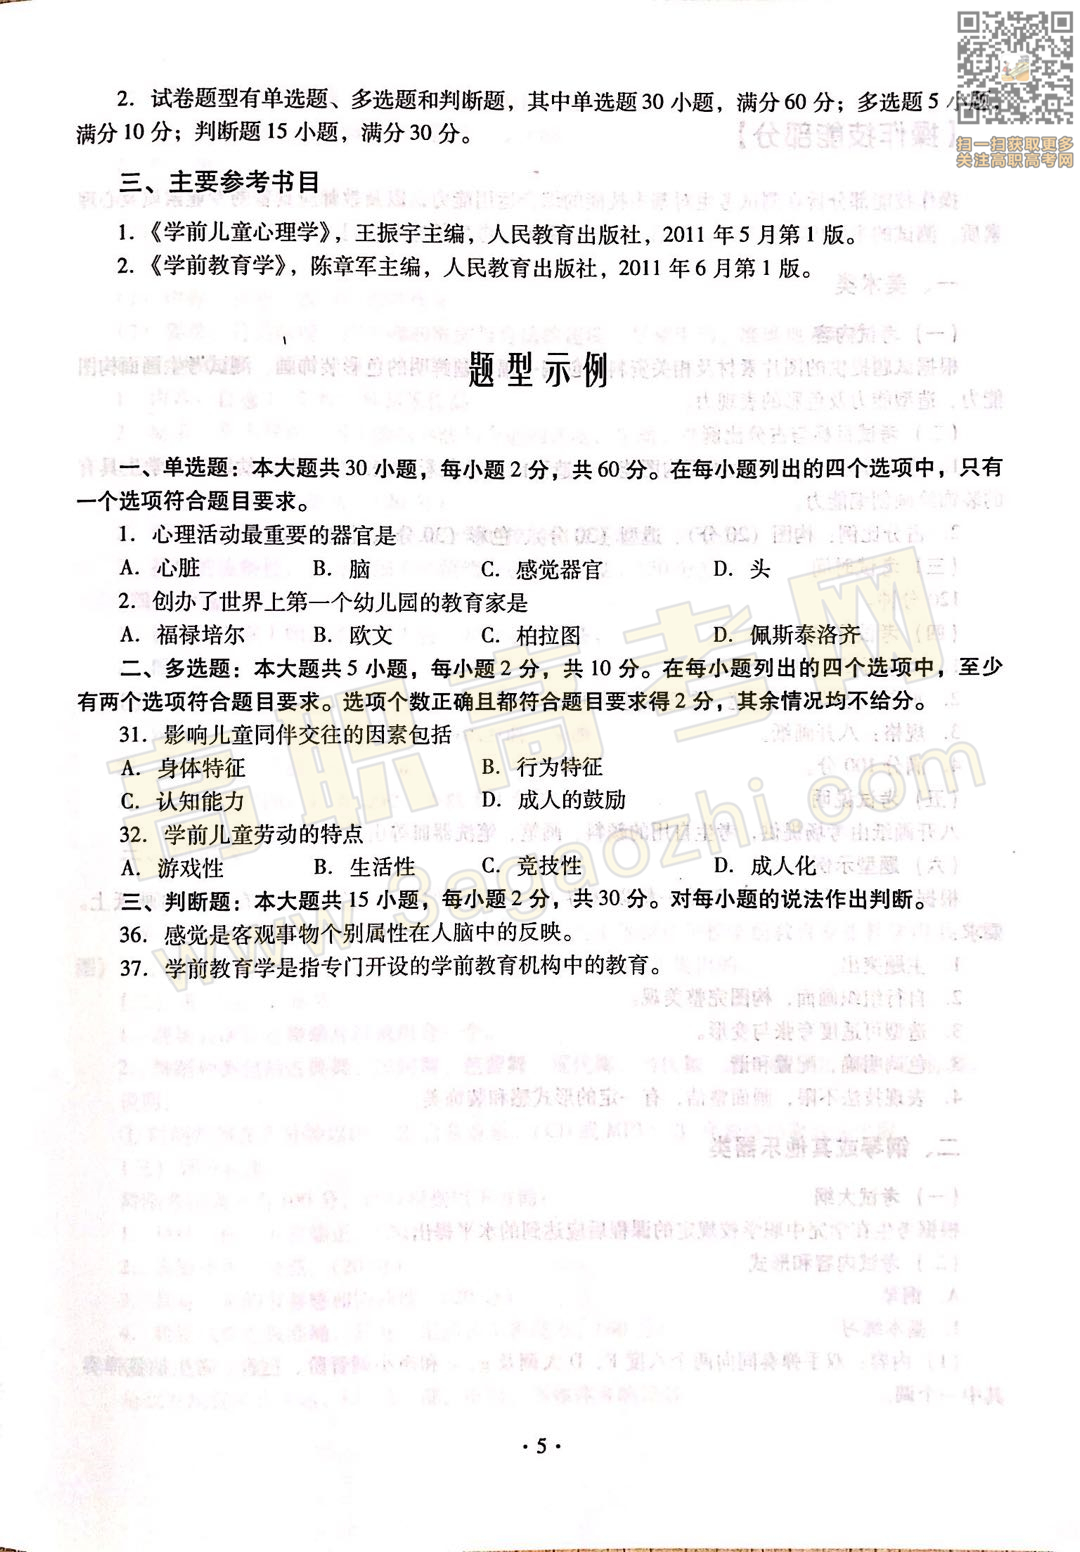 教育基础综合证书,2020年广东中职技能课程考试大纲及样题